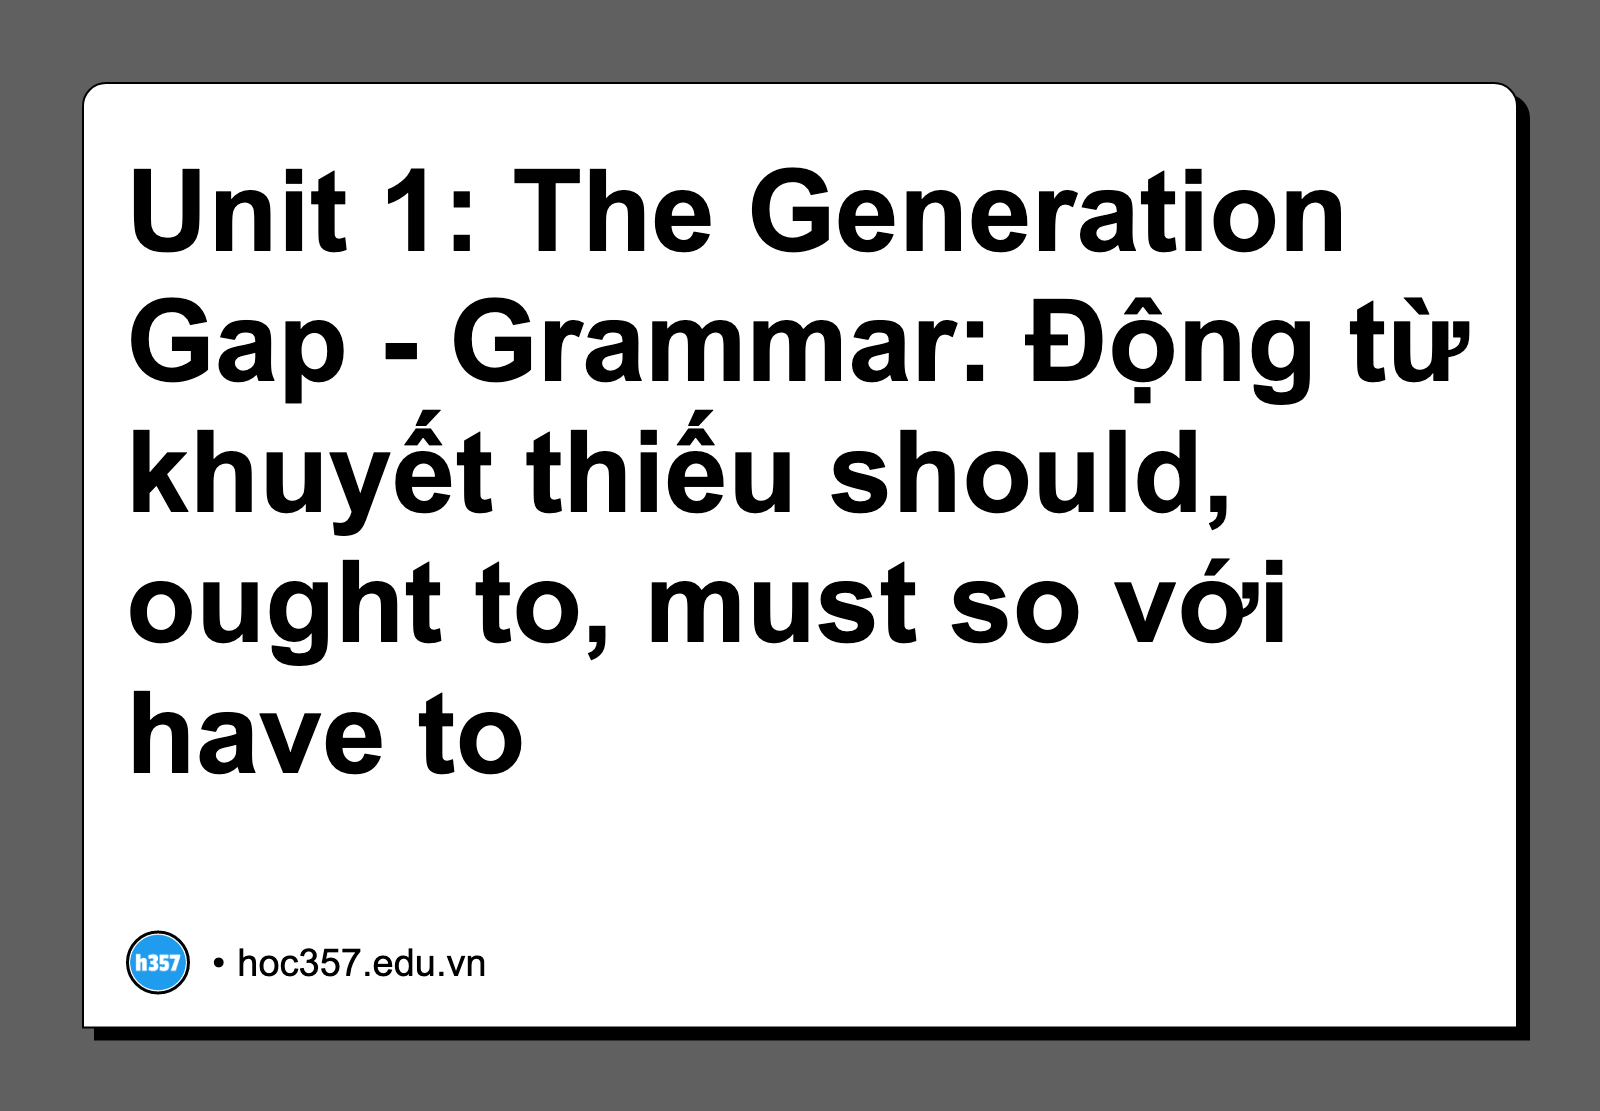 Hình minh họa Unit 1: The Generation Gap - Grammar: Động từ khuyết thiếu should, ought to, must so với have to